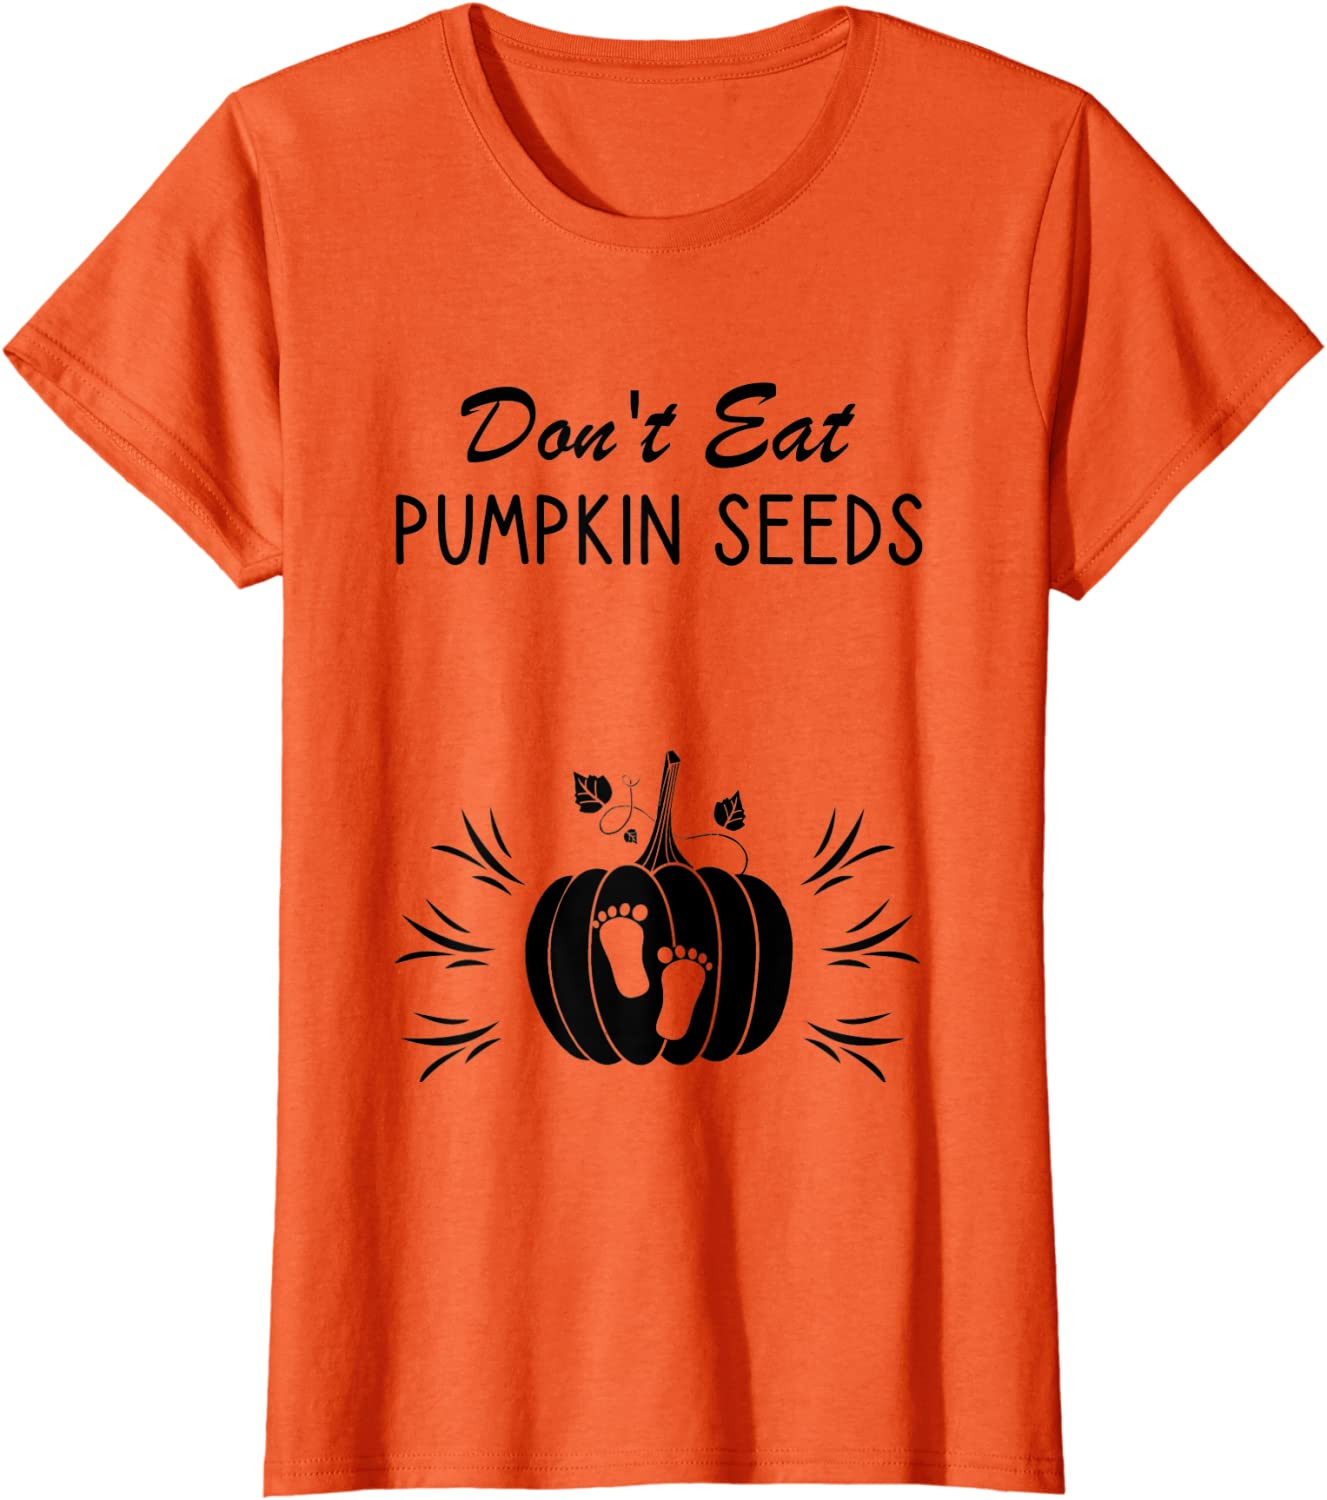 Don't Eat Pumpkin Seeds - Halloween Pregnancy Announcement T-Shirt